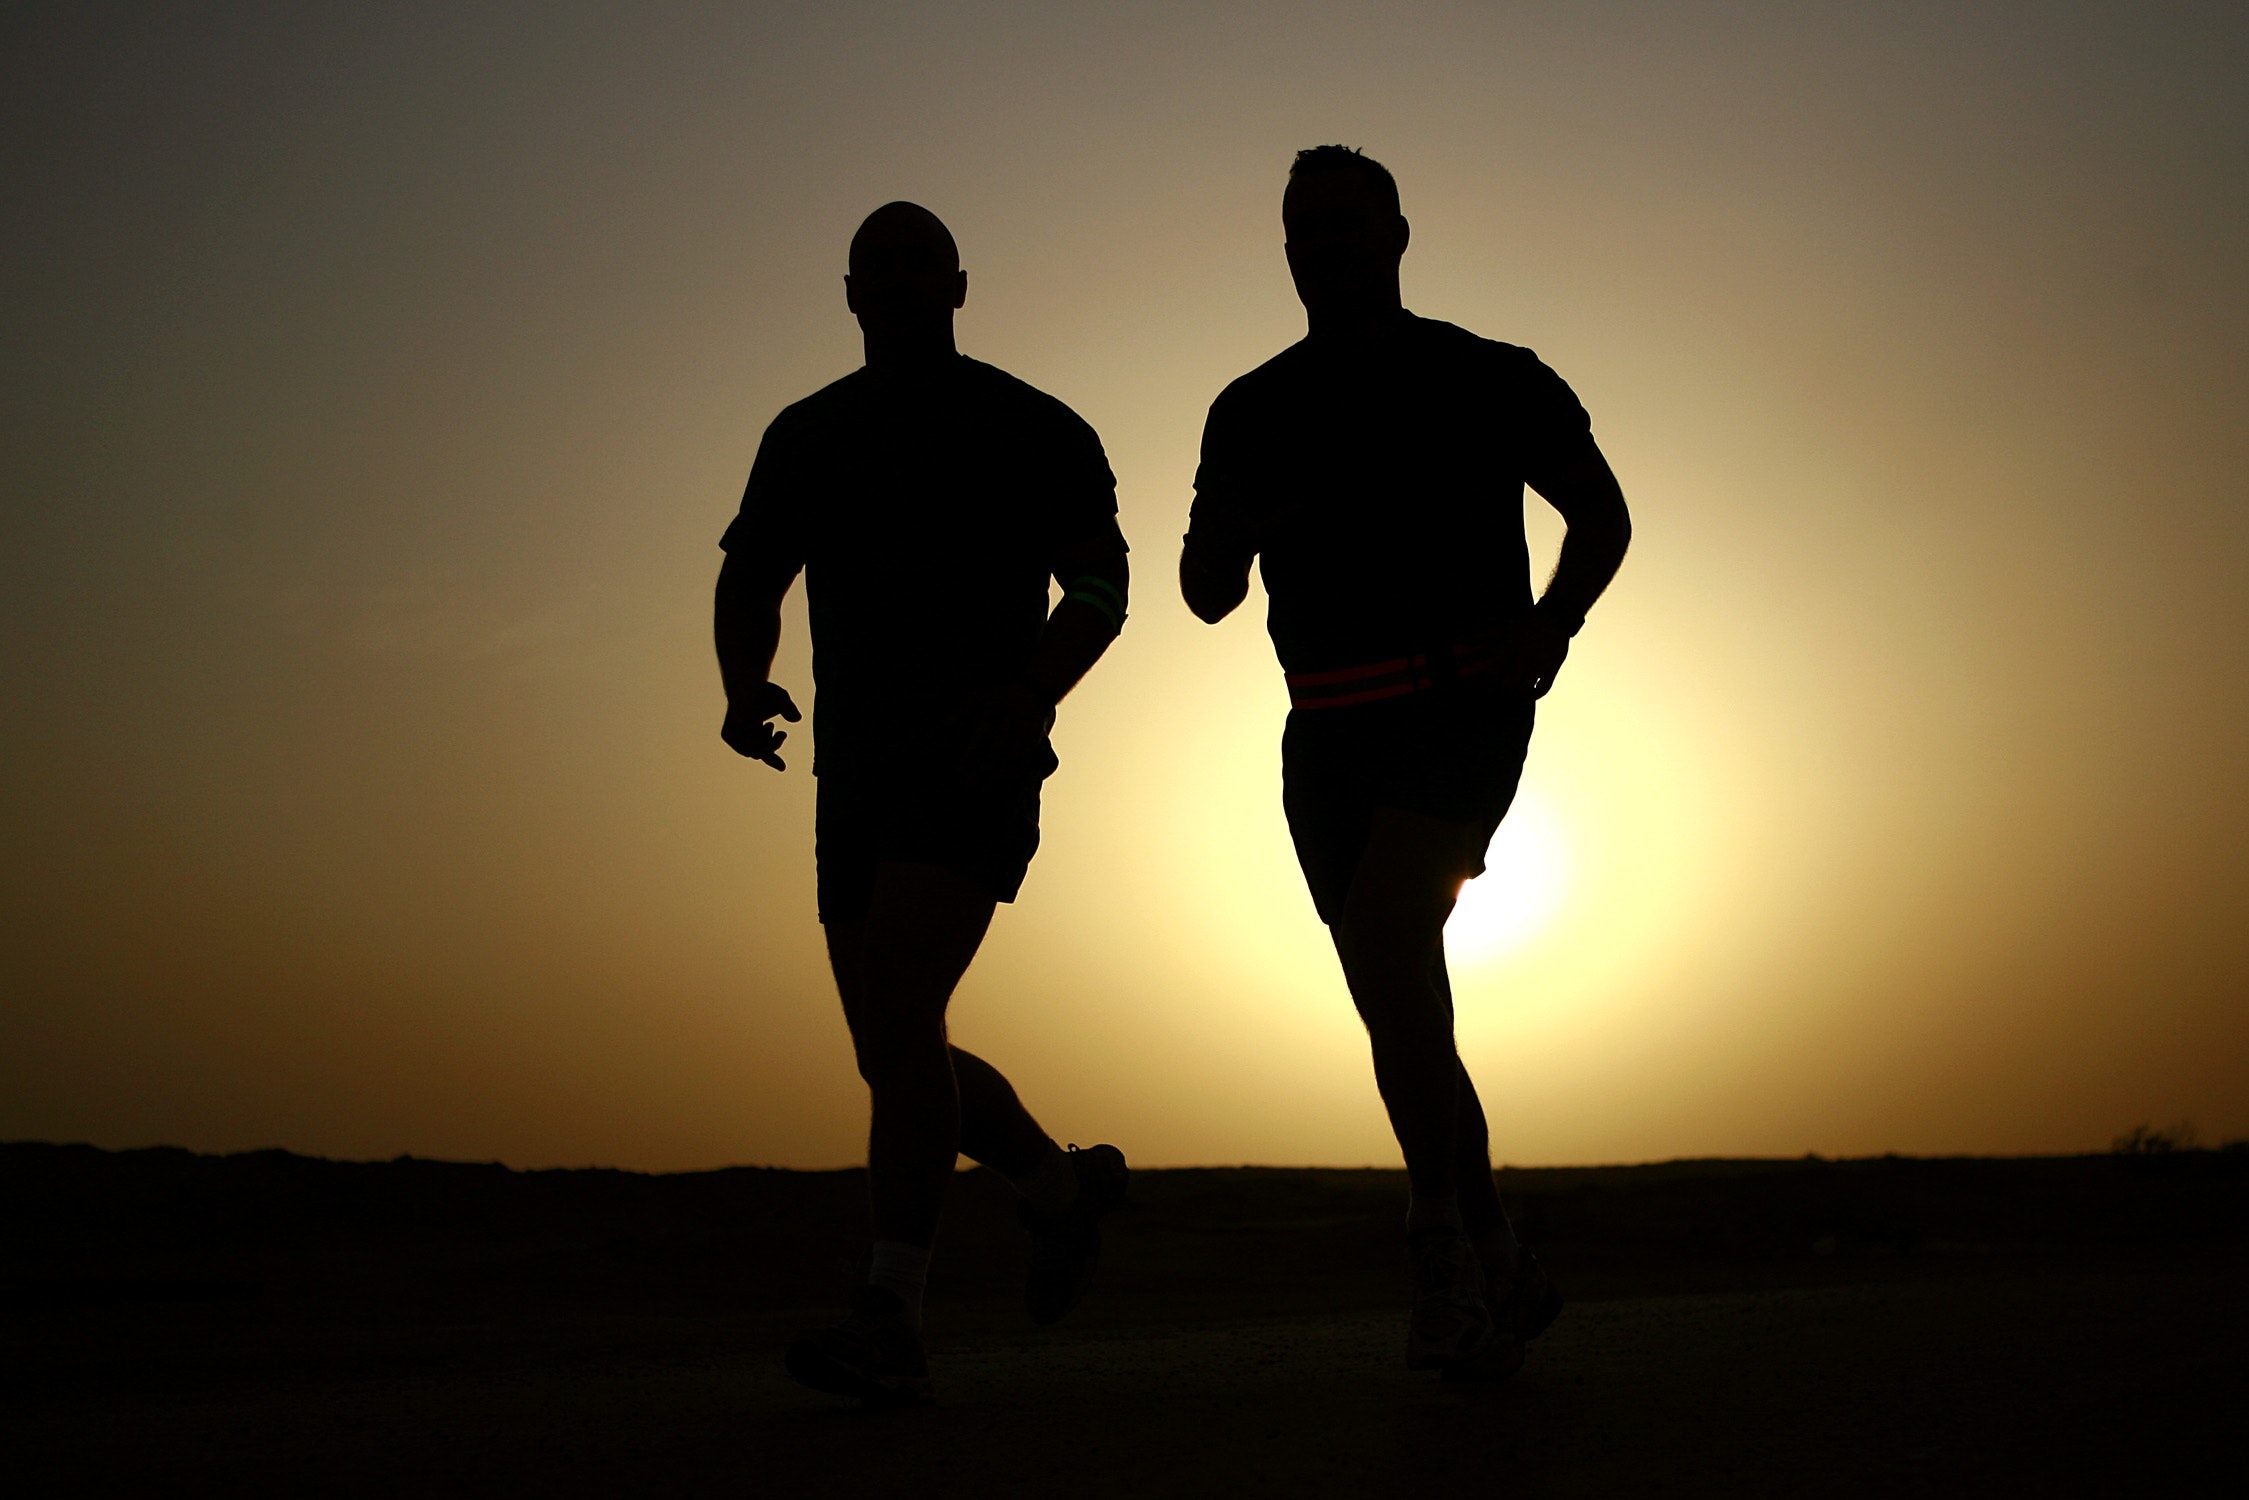 men running for exercise benefits